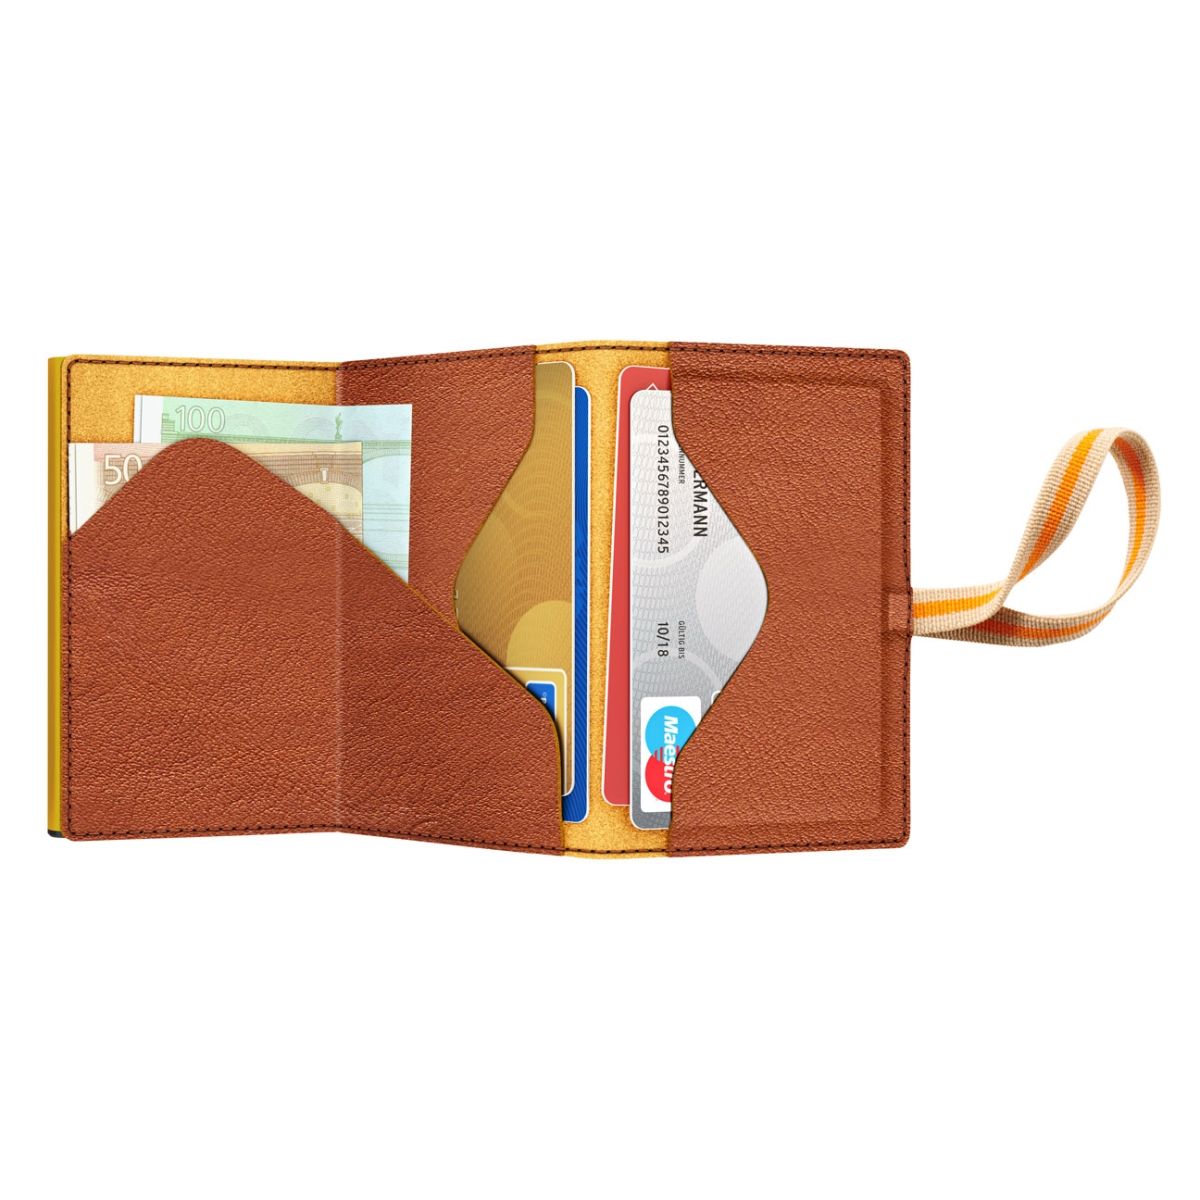 TRU VIRTU Click n Slide Sleek Wallet With Strap - Caramba Brown